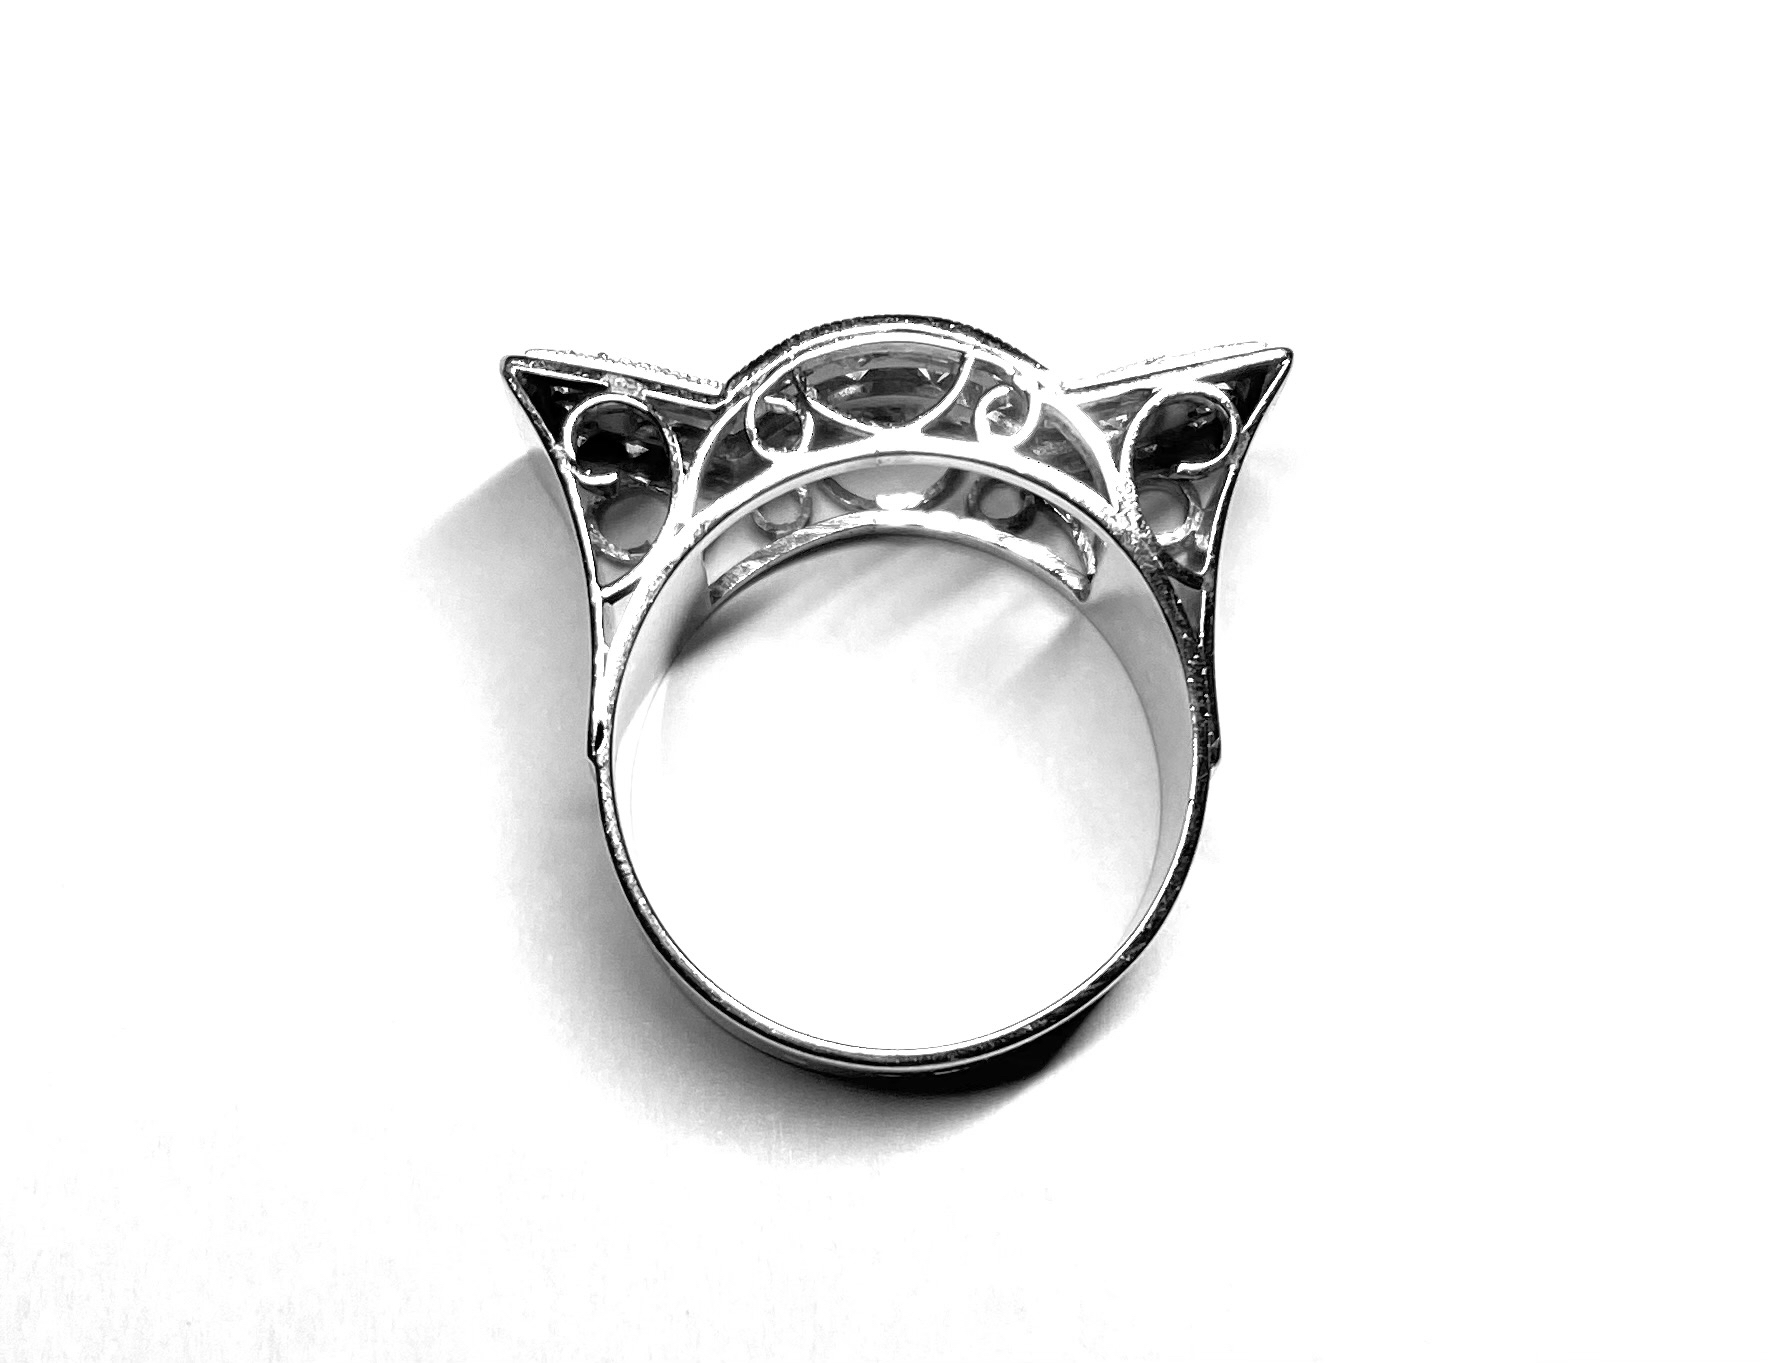 Modernist geometric diamond ring (1 carat)-2